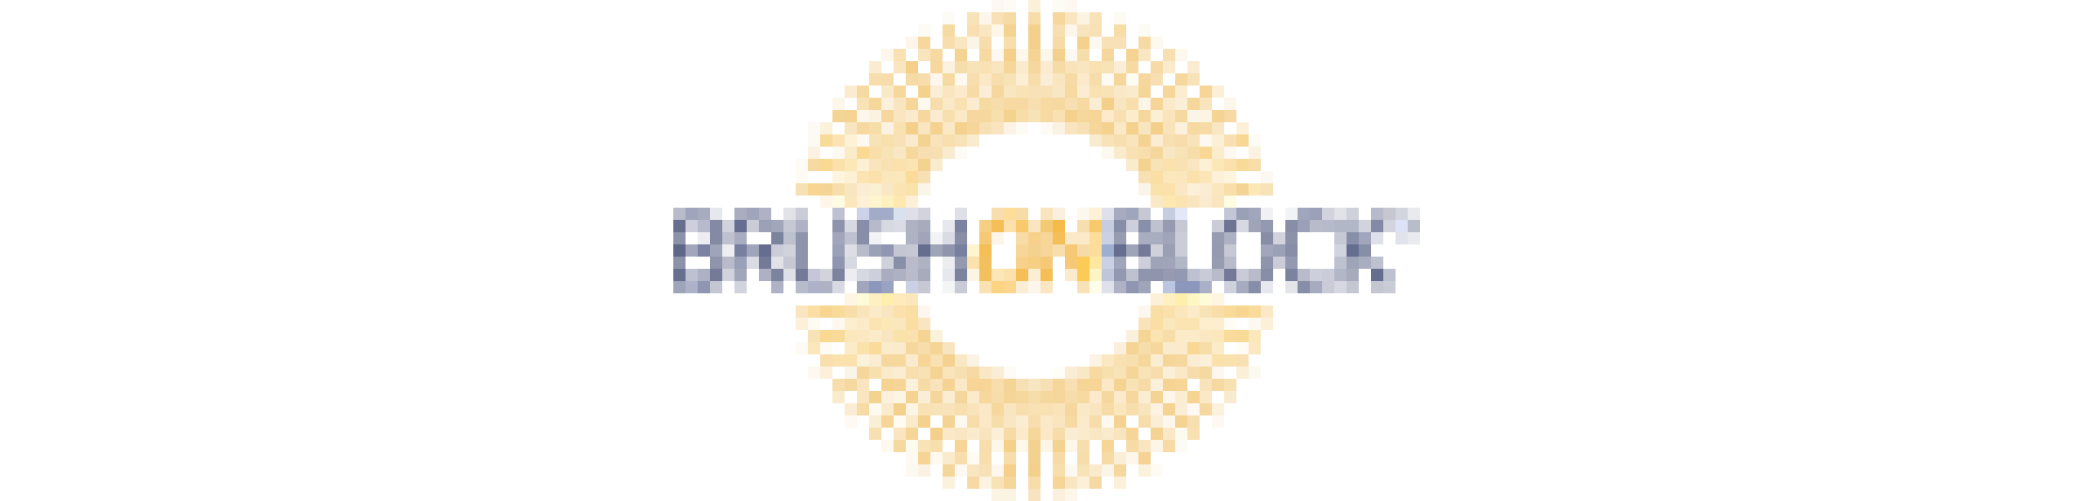 brush-on-block-logo